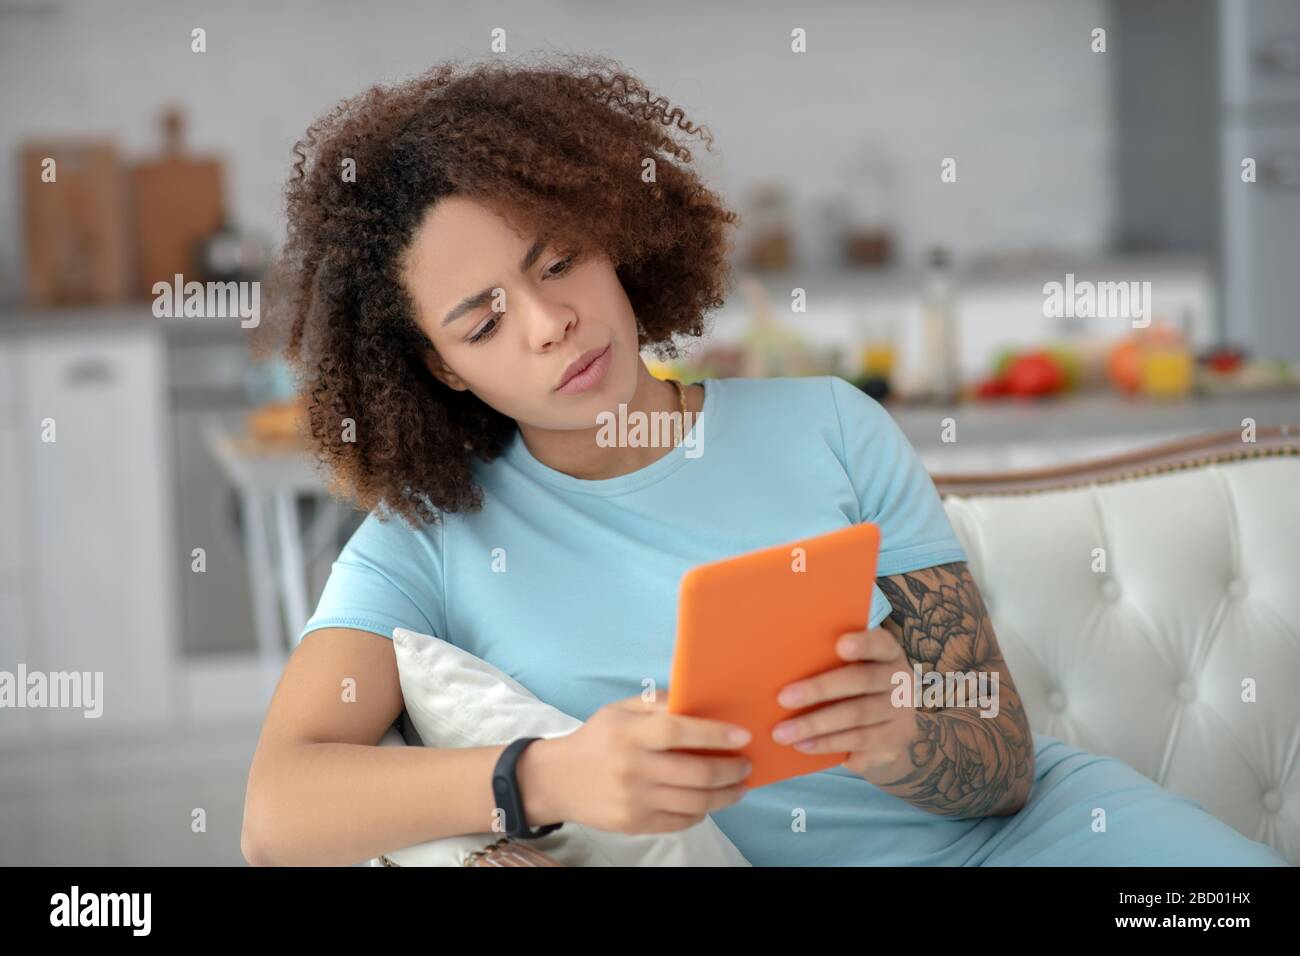 Ernsthafte Frau, die auf einer Couch sitzt und auf eine Tablette blickt. Stockfoto